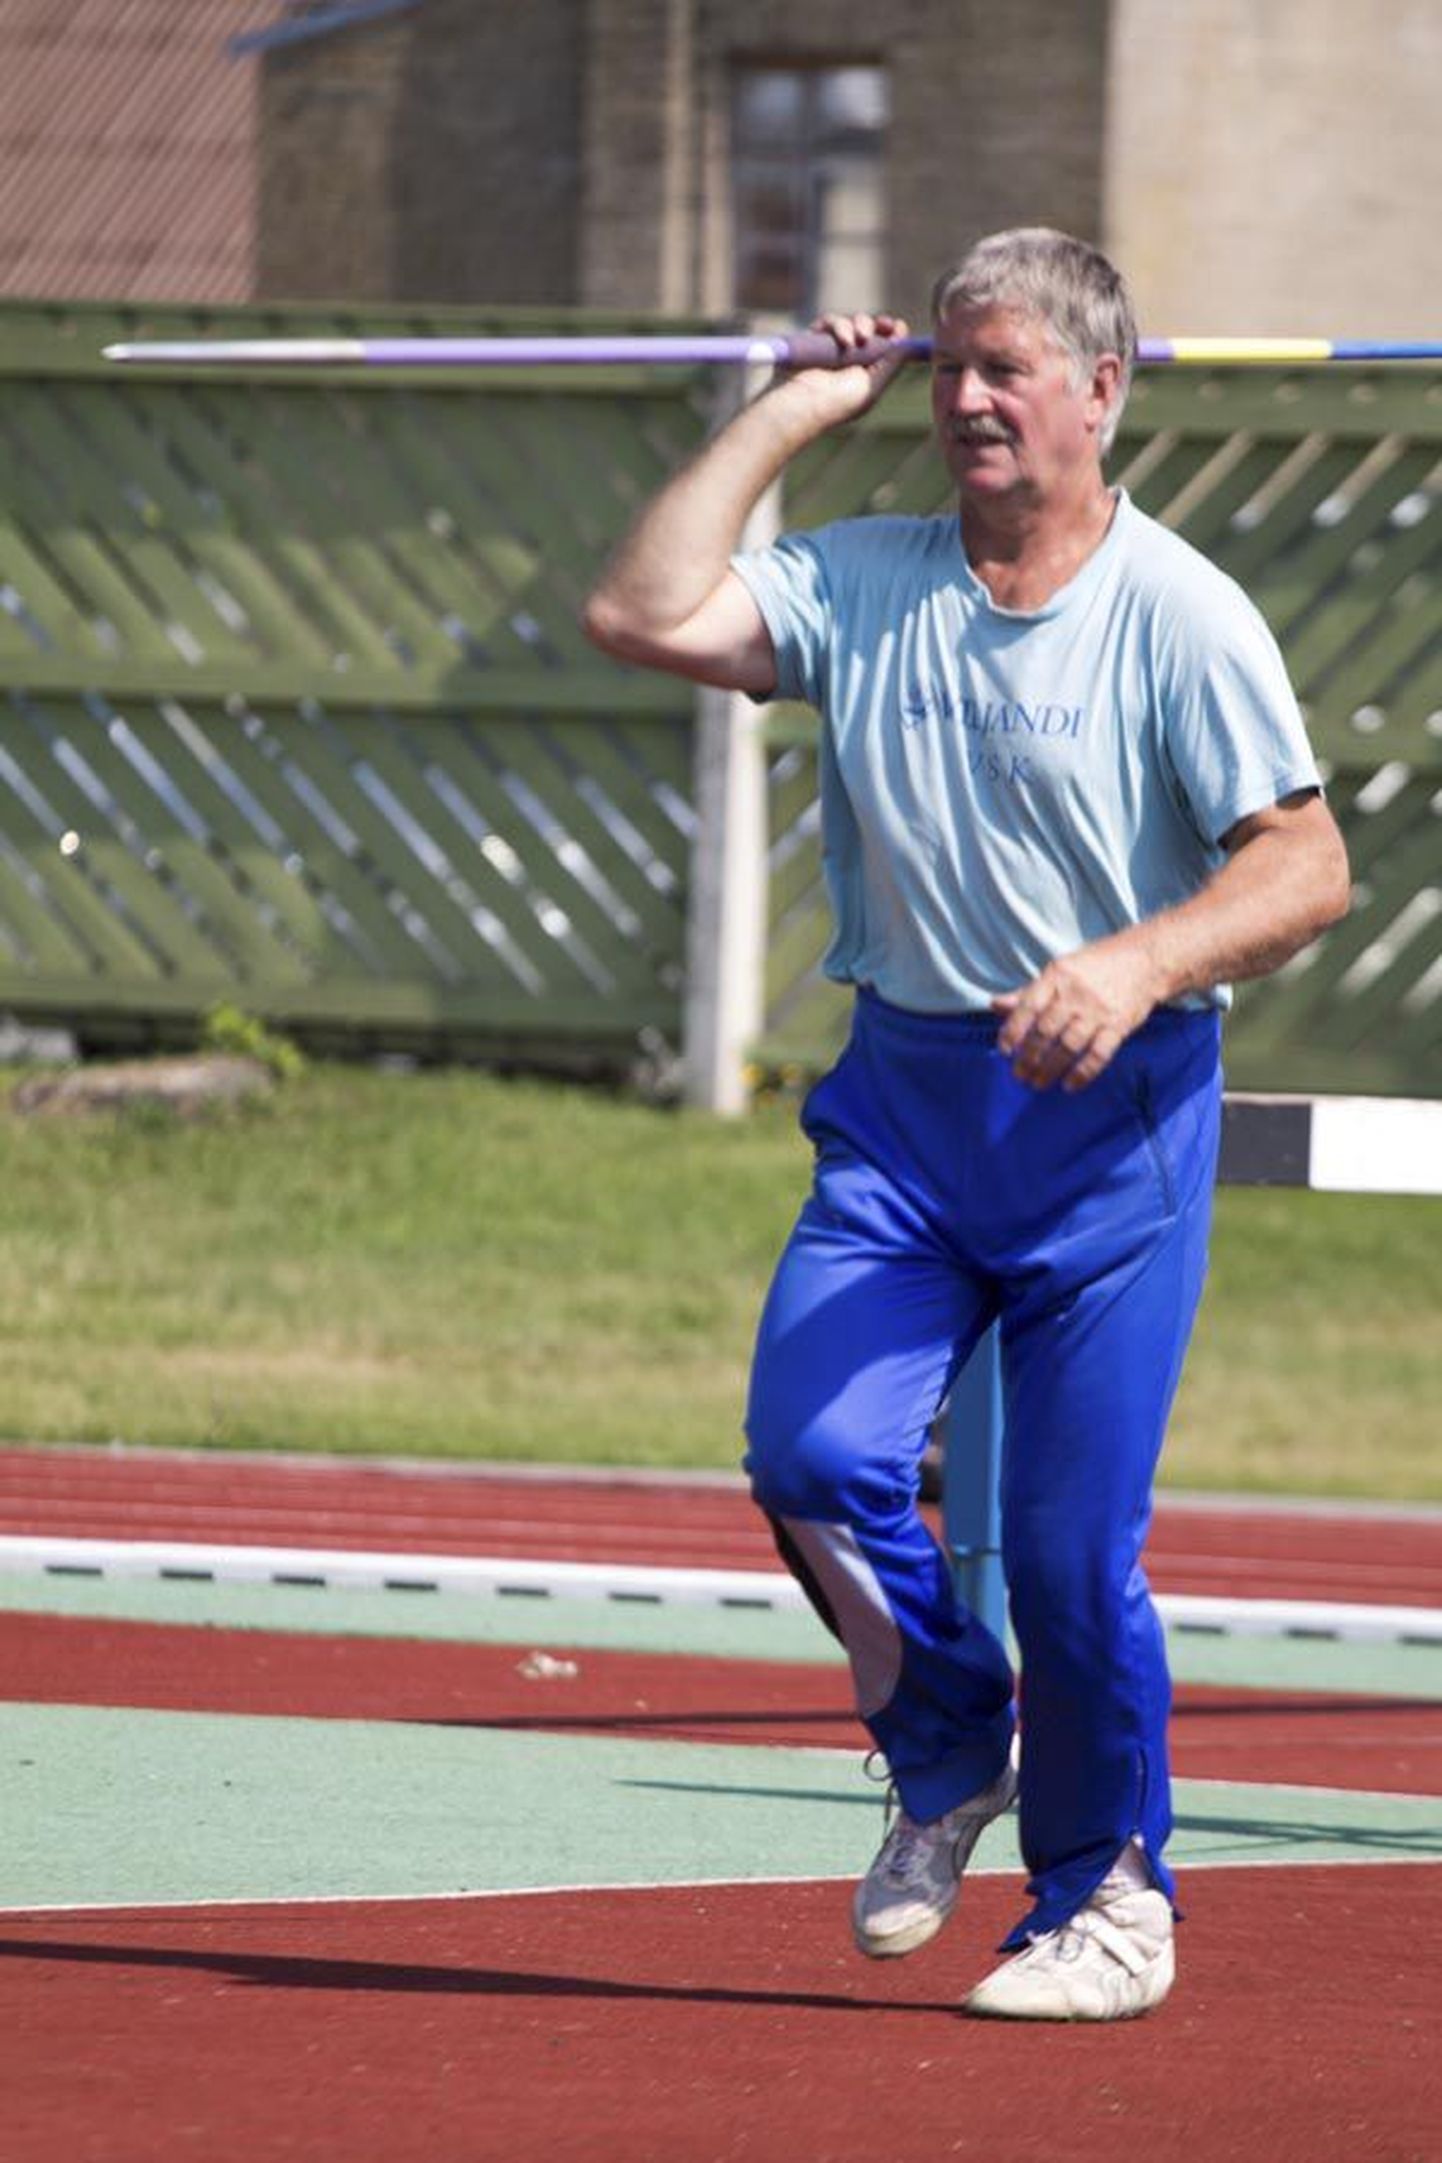 Arvo Nurm tuli heidete mitmevõistluses seenioride Euroopa meistriks. Pilt on tehtud augusti alguses Viljandis peetud veteranide Balti meistrivõistlustel.